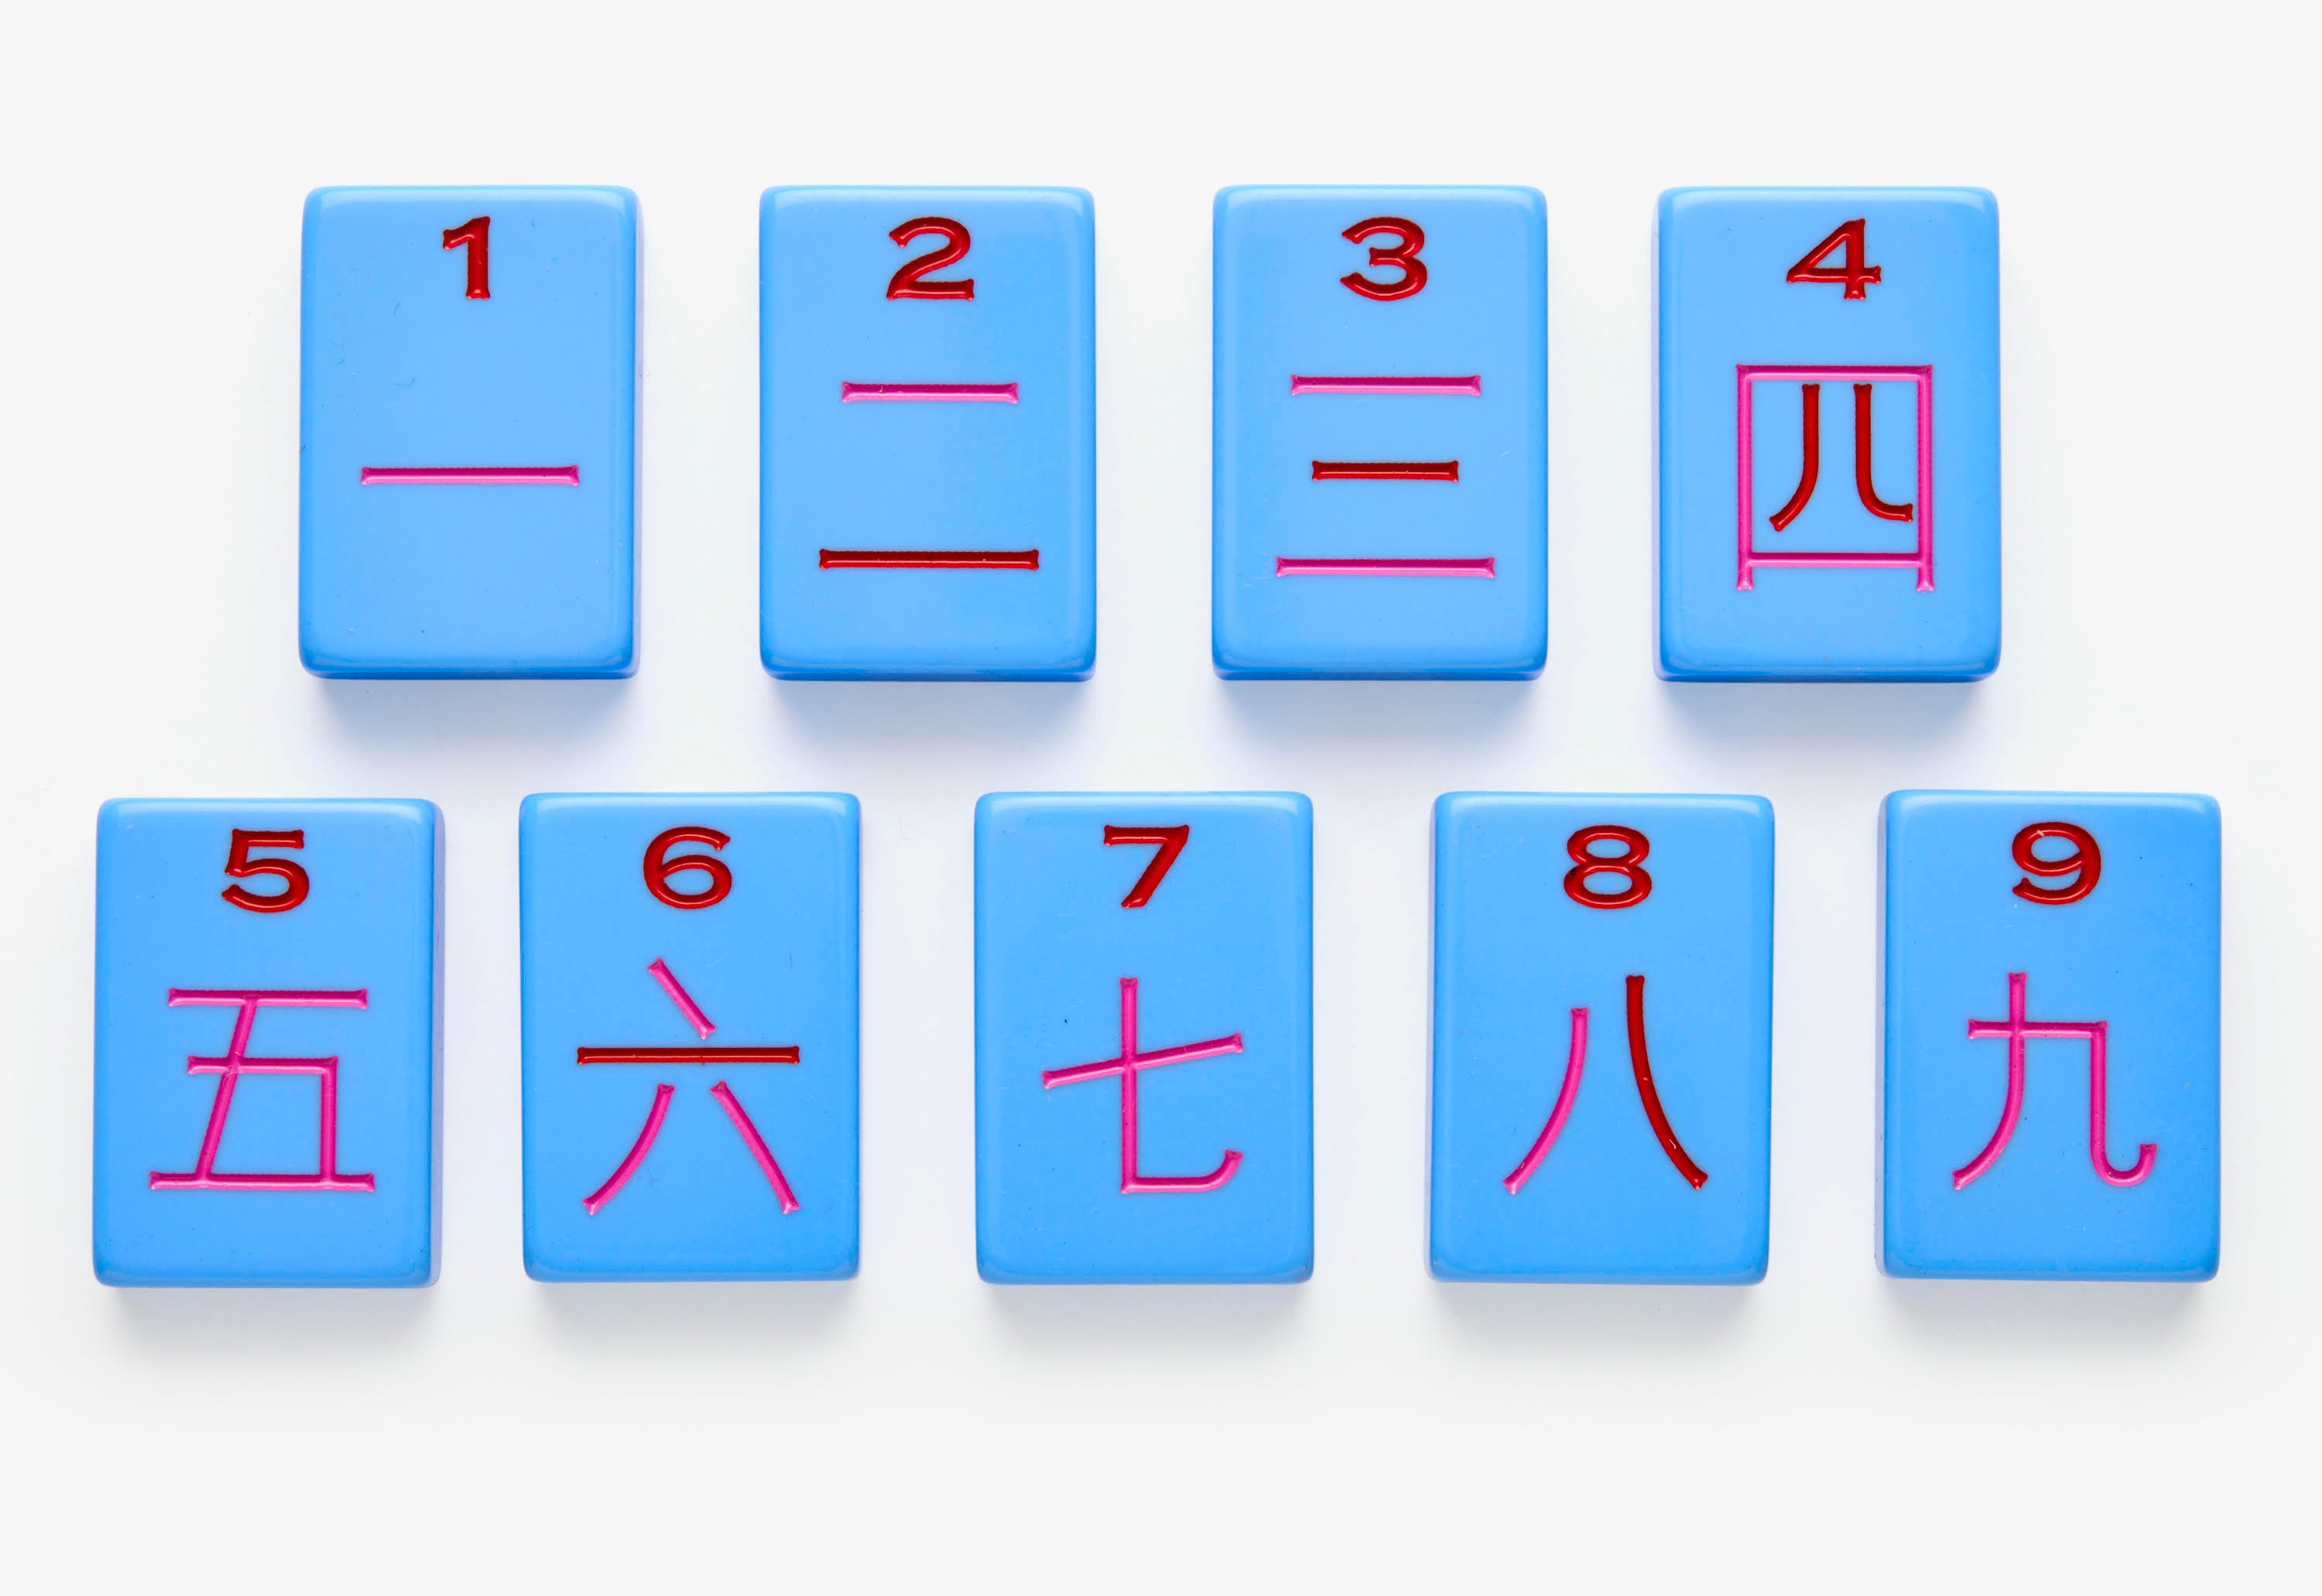 How to play mahjong - learn to mahjong rules - Mahjong Tiles Crack